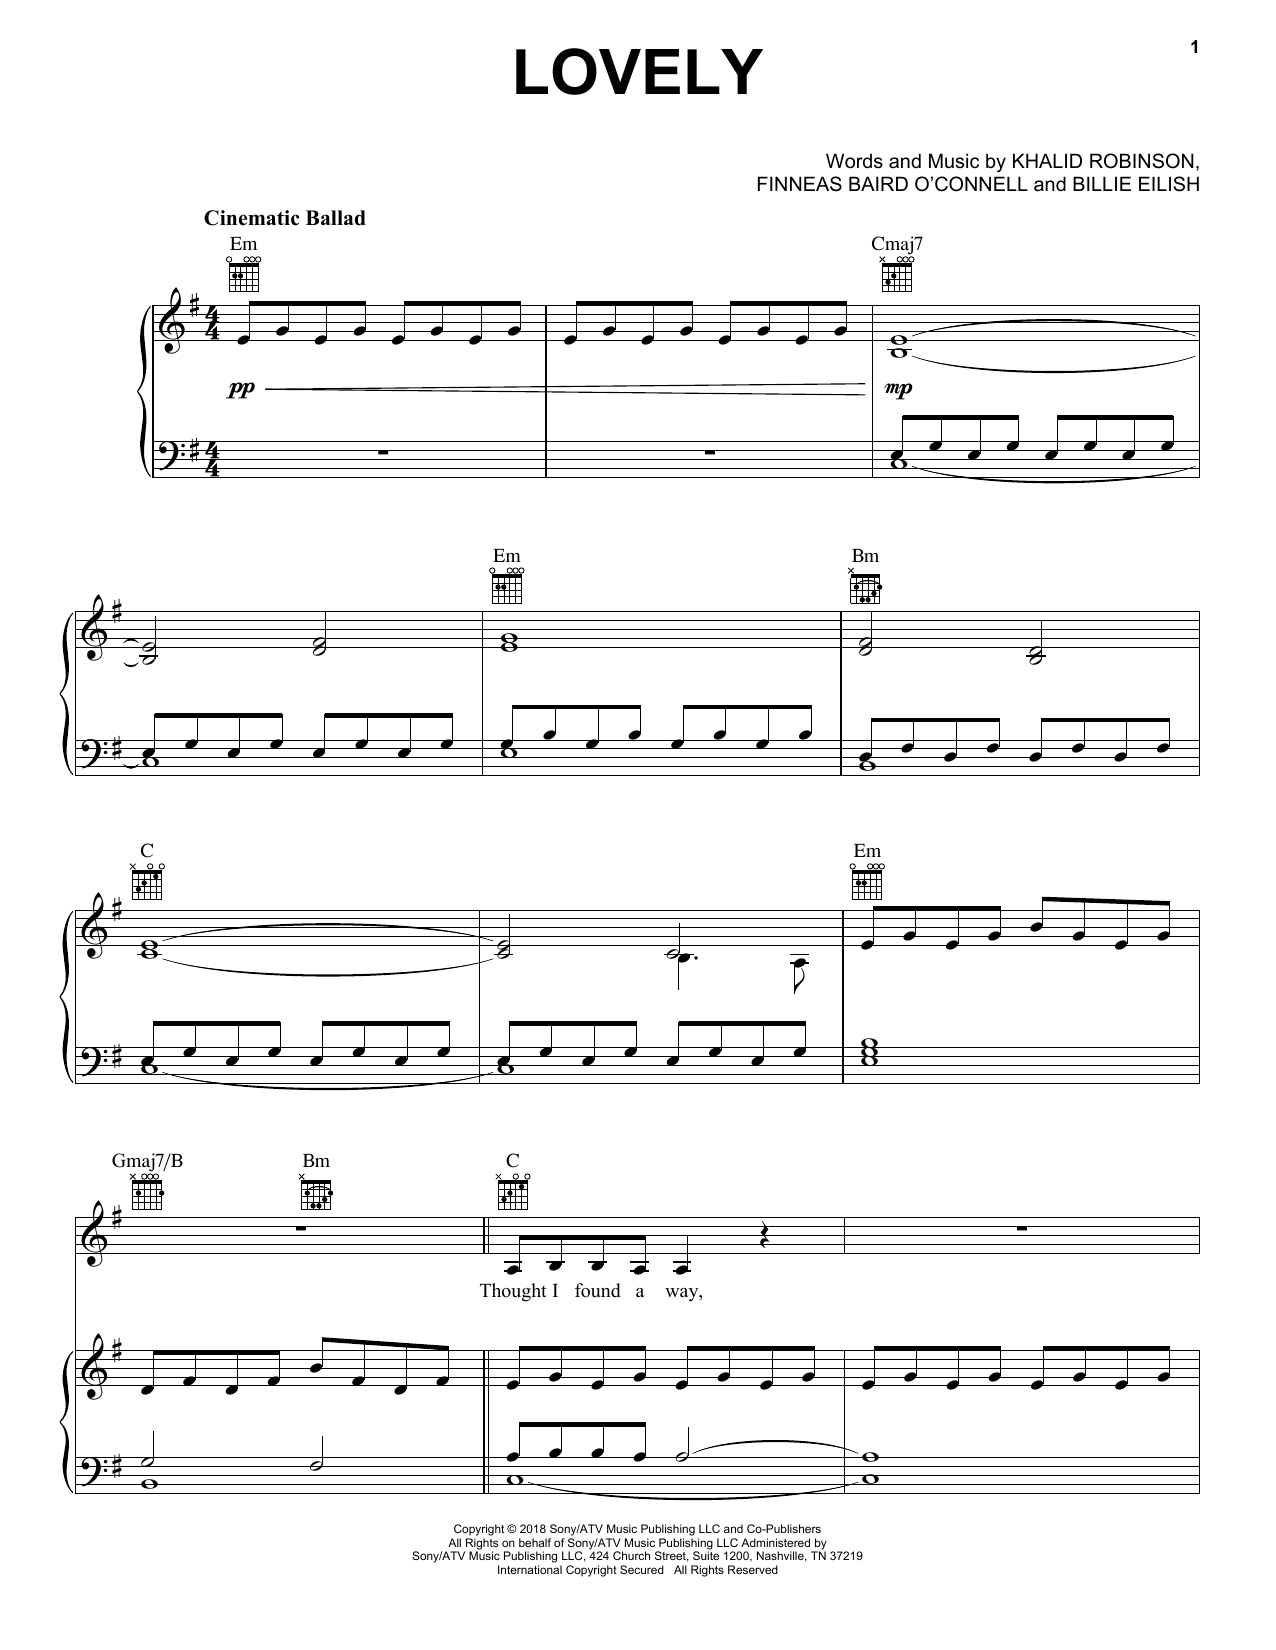 Reduktion når som helst Smitsom sygdom Billie Eilish & Khalid "lovely (from 13 Reasons Why)" Sheet Music Notes,  Chords | Pop Partiture Ukulele Download Printable PDF 448112